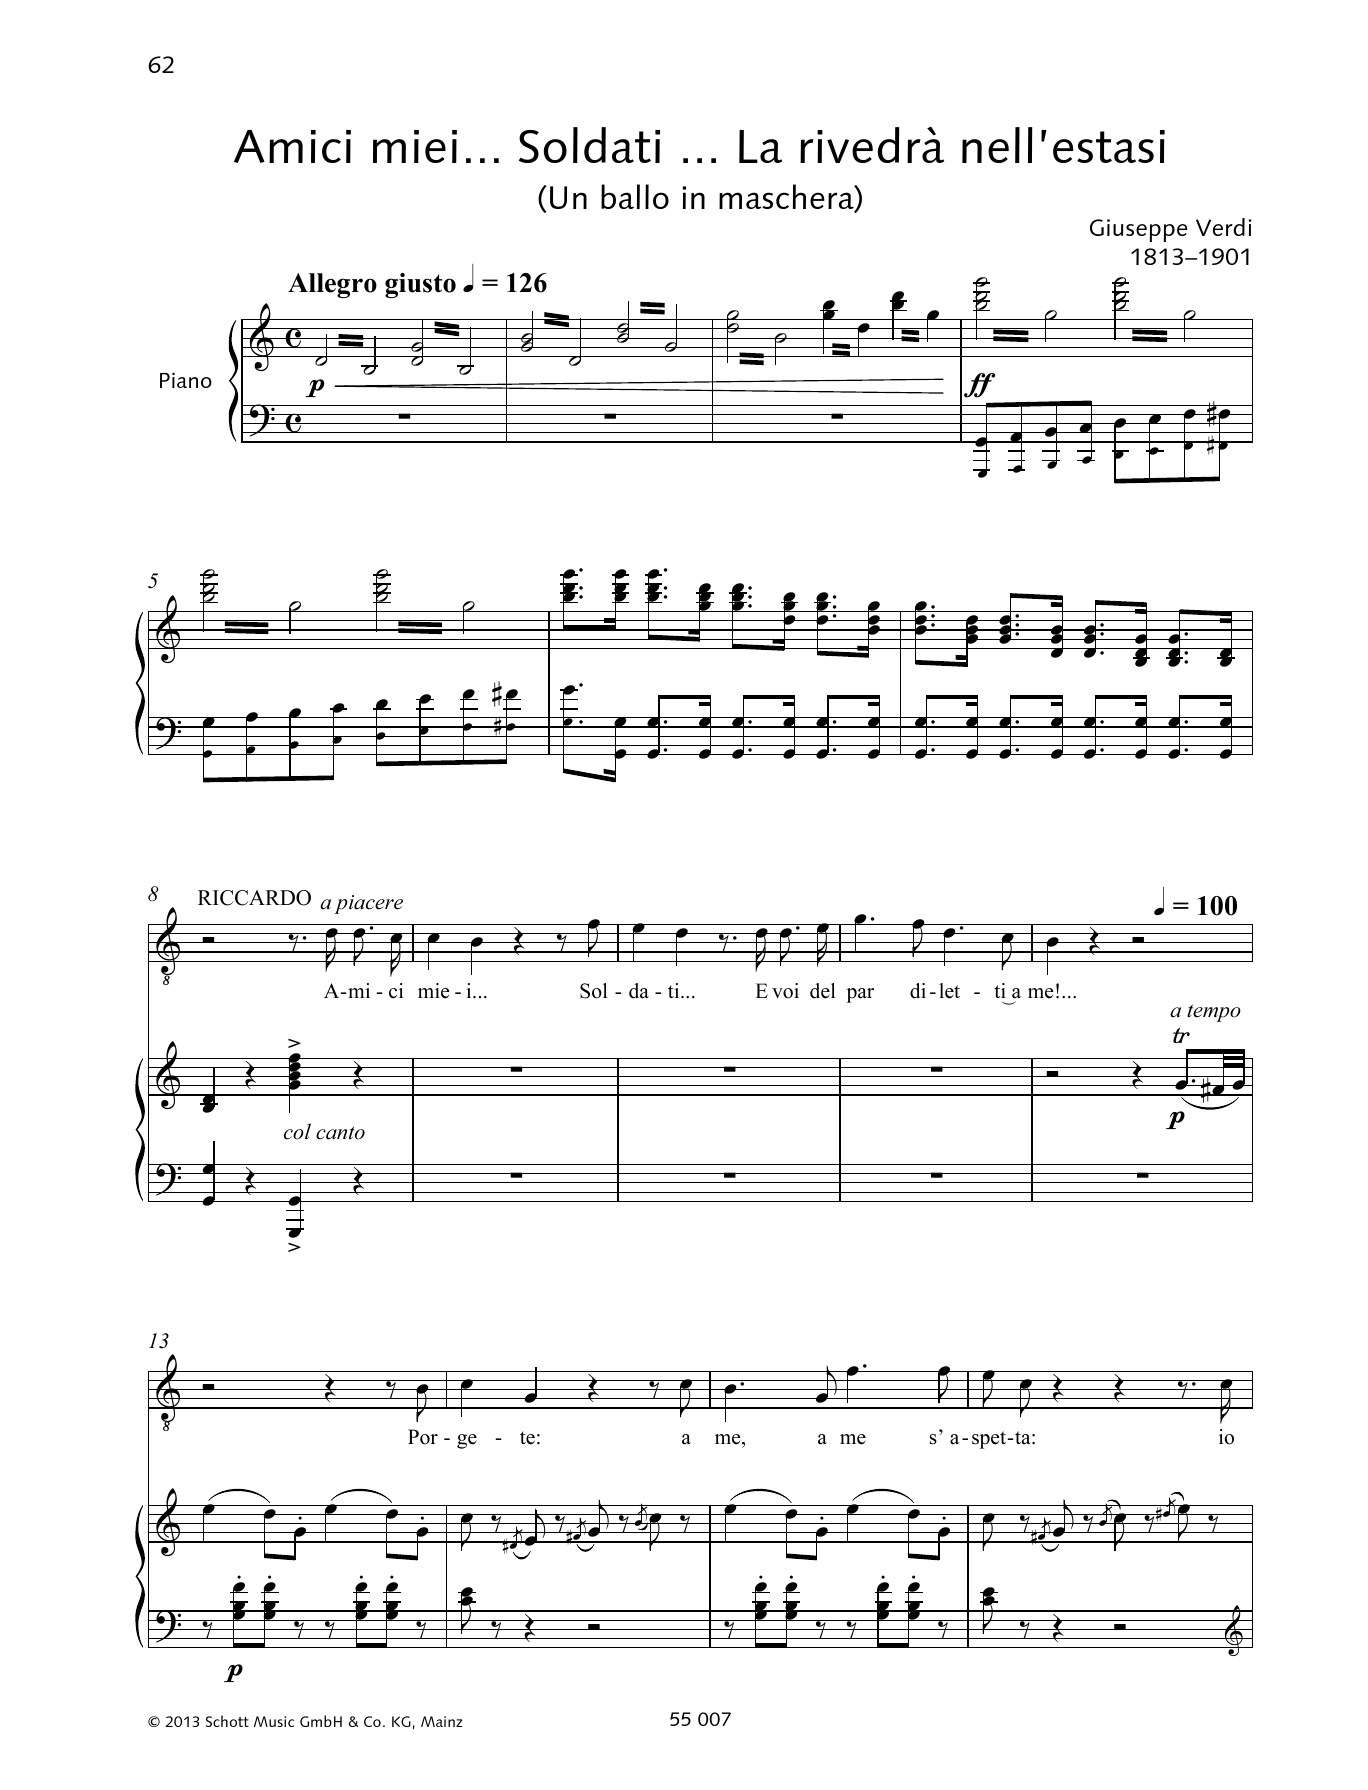 Giuseppe Verdi Amici miei ... Soldati ... La rivedra nell'estasi Sheet Music Notes & Chords for Piano & Vocal - Download or Print PDF